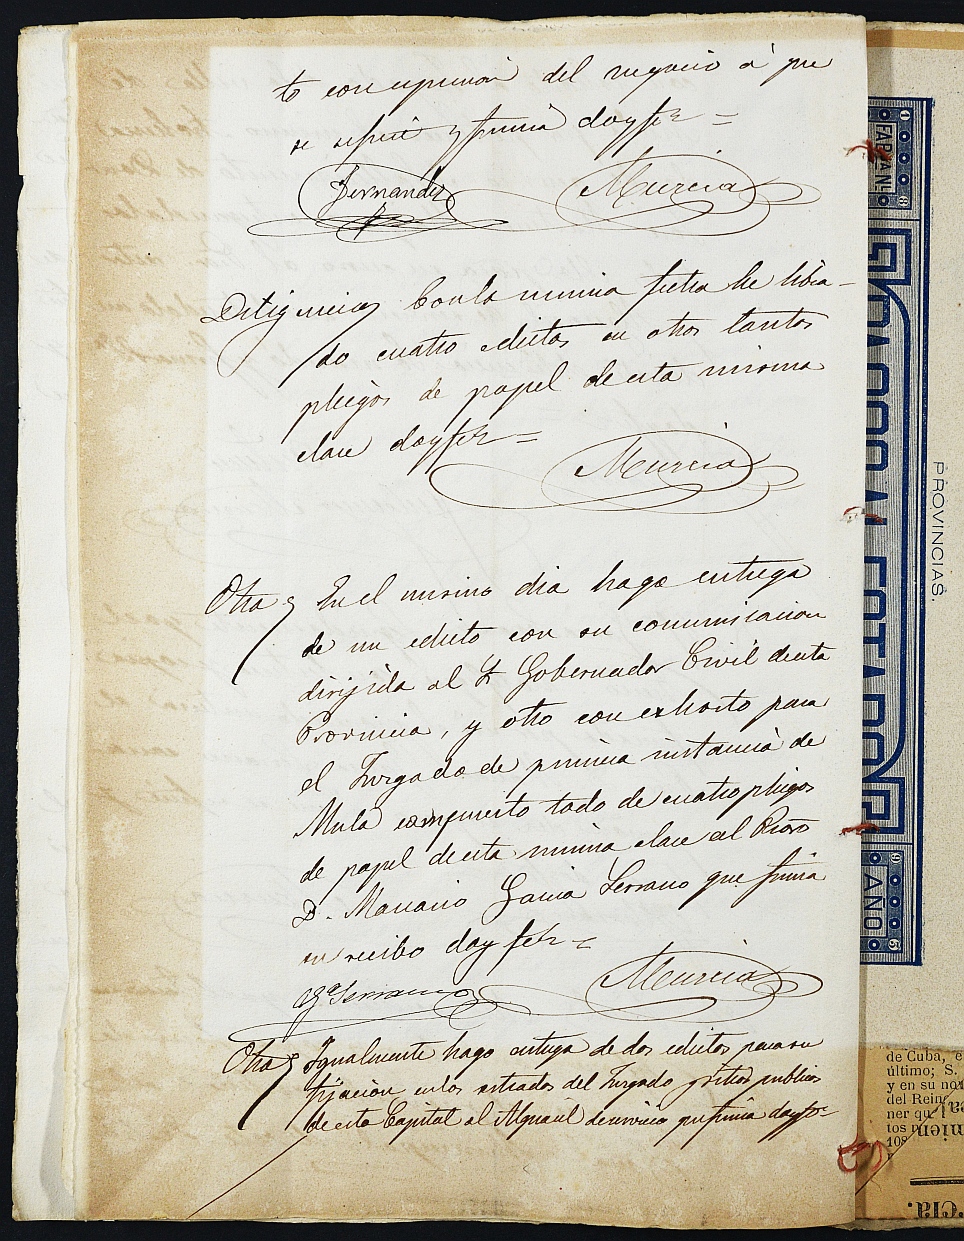 Declaración de herederos s.n./1893 del Juzgado del Distrito de San Juan de Murcia, por defunción de José Martínez Máiquez.